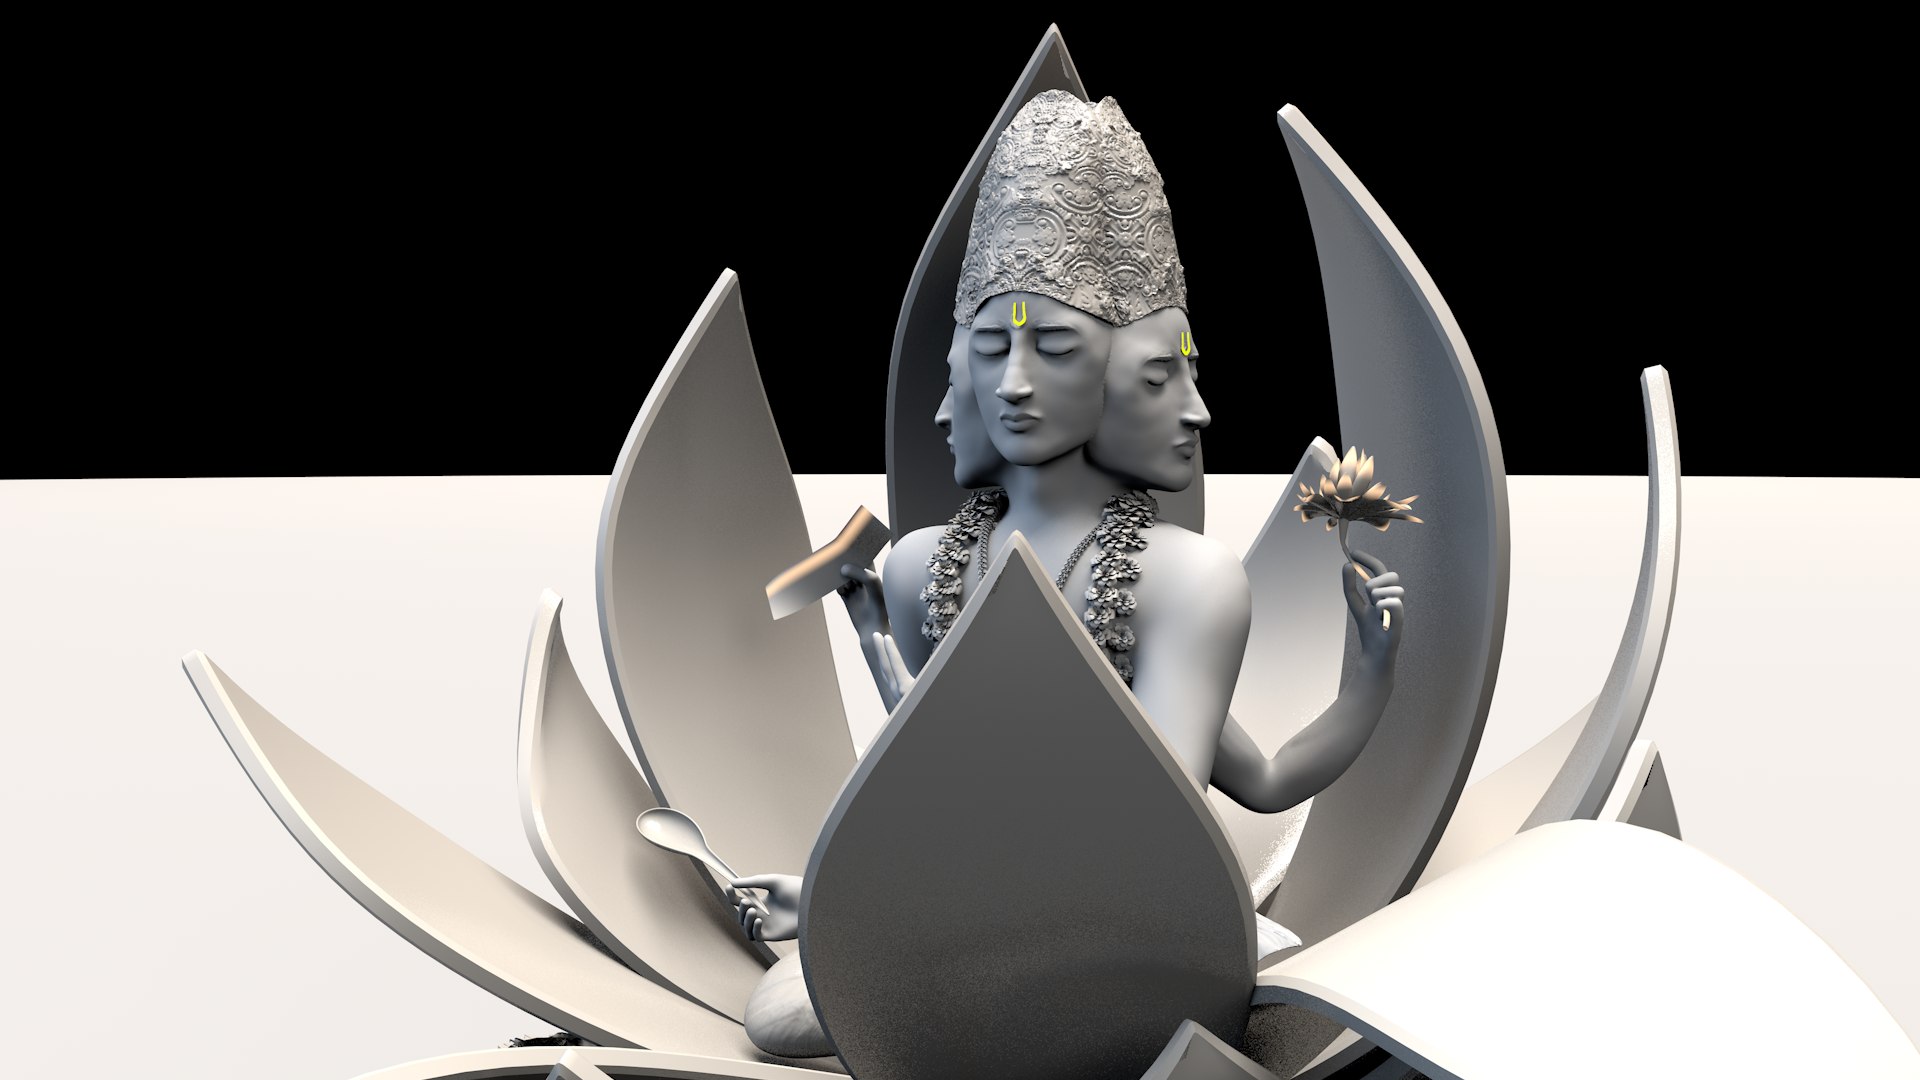 Custom rasterizer for 3D models (WIP) video - Brahma - Indie DB